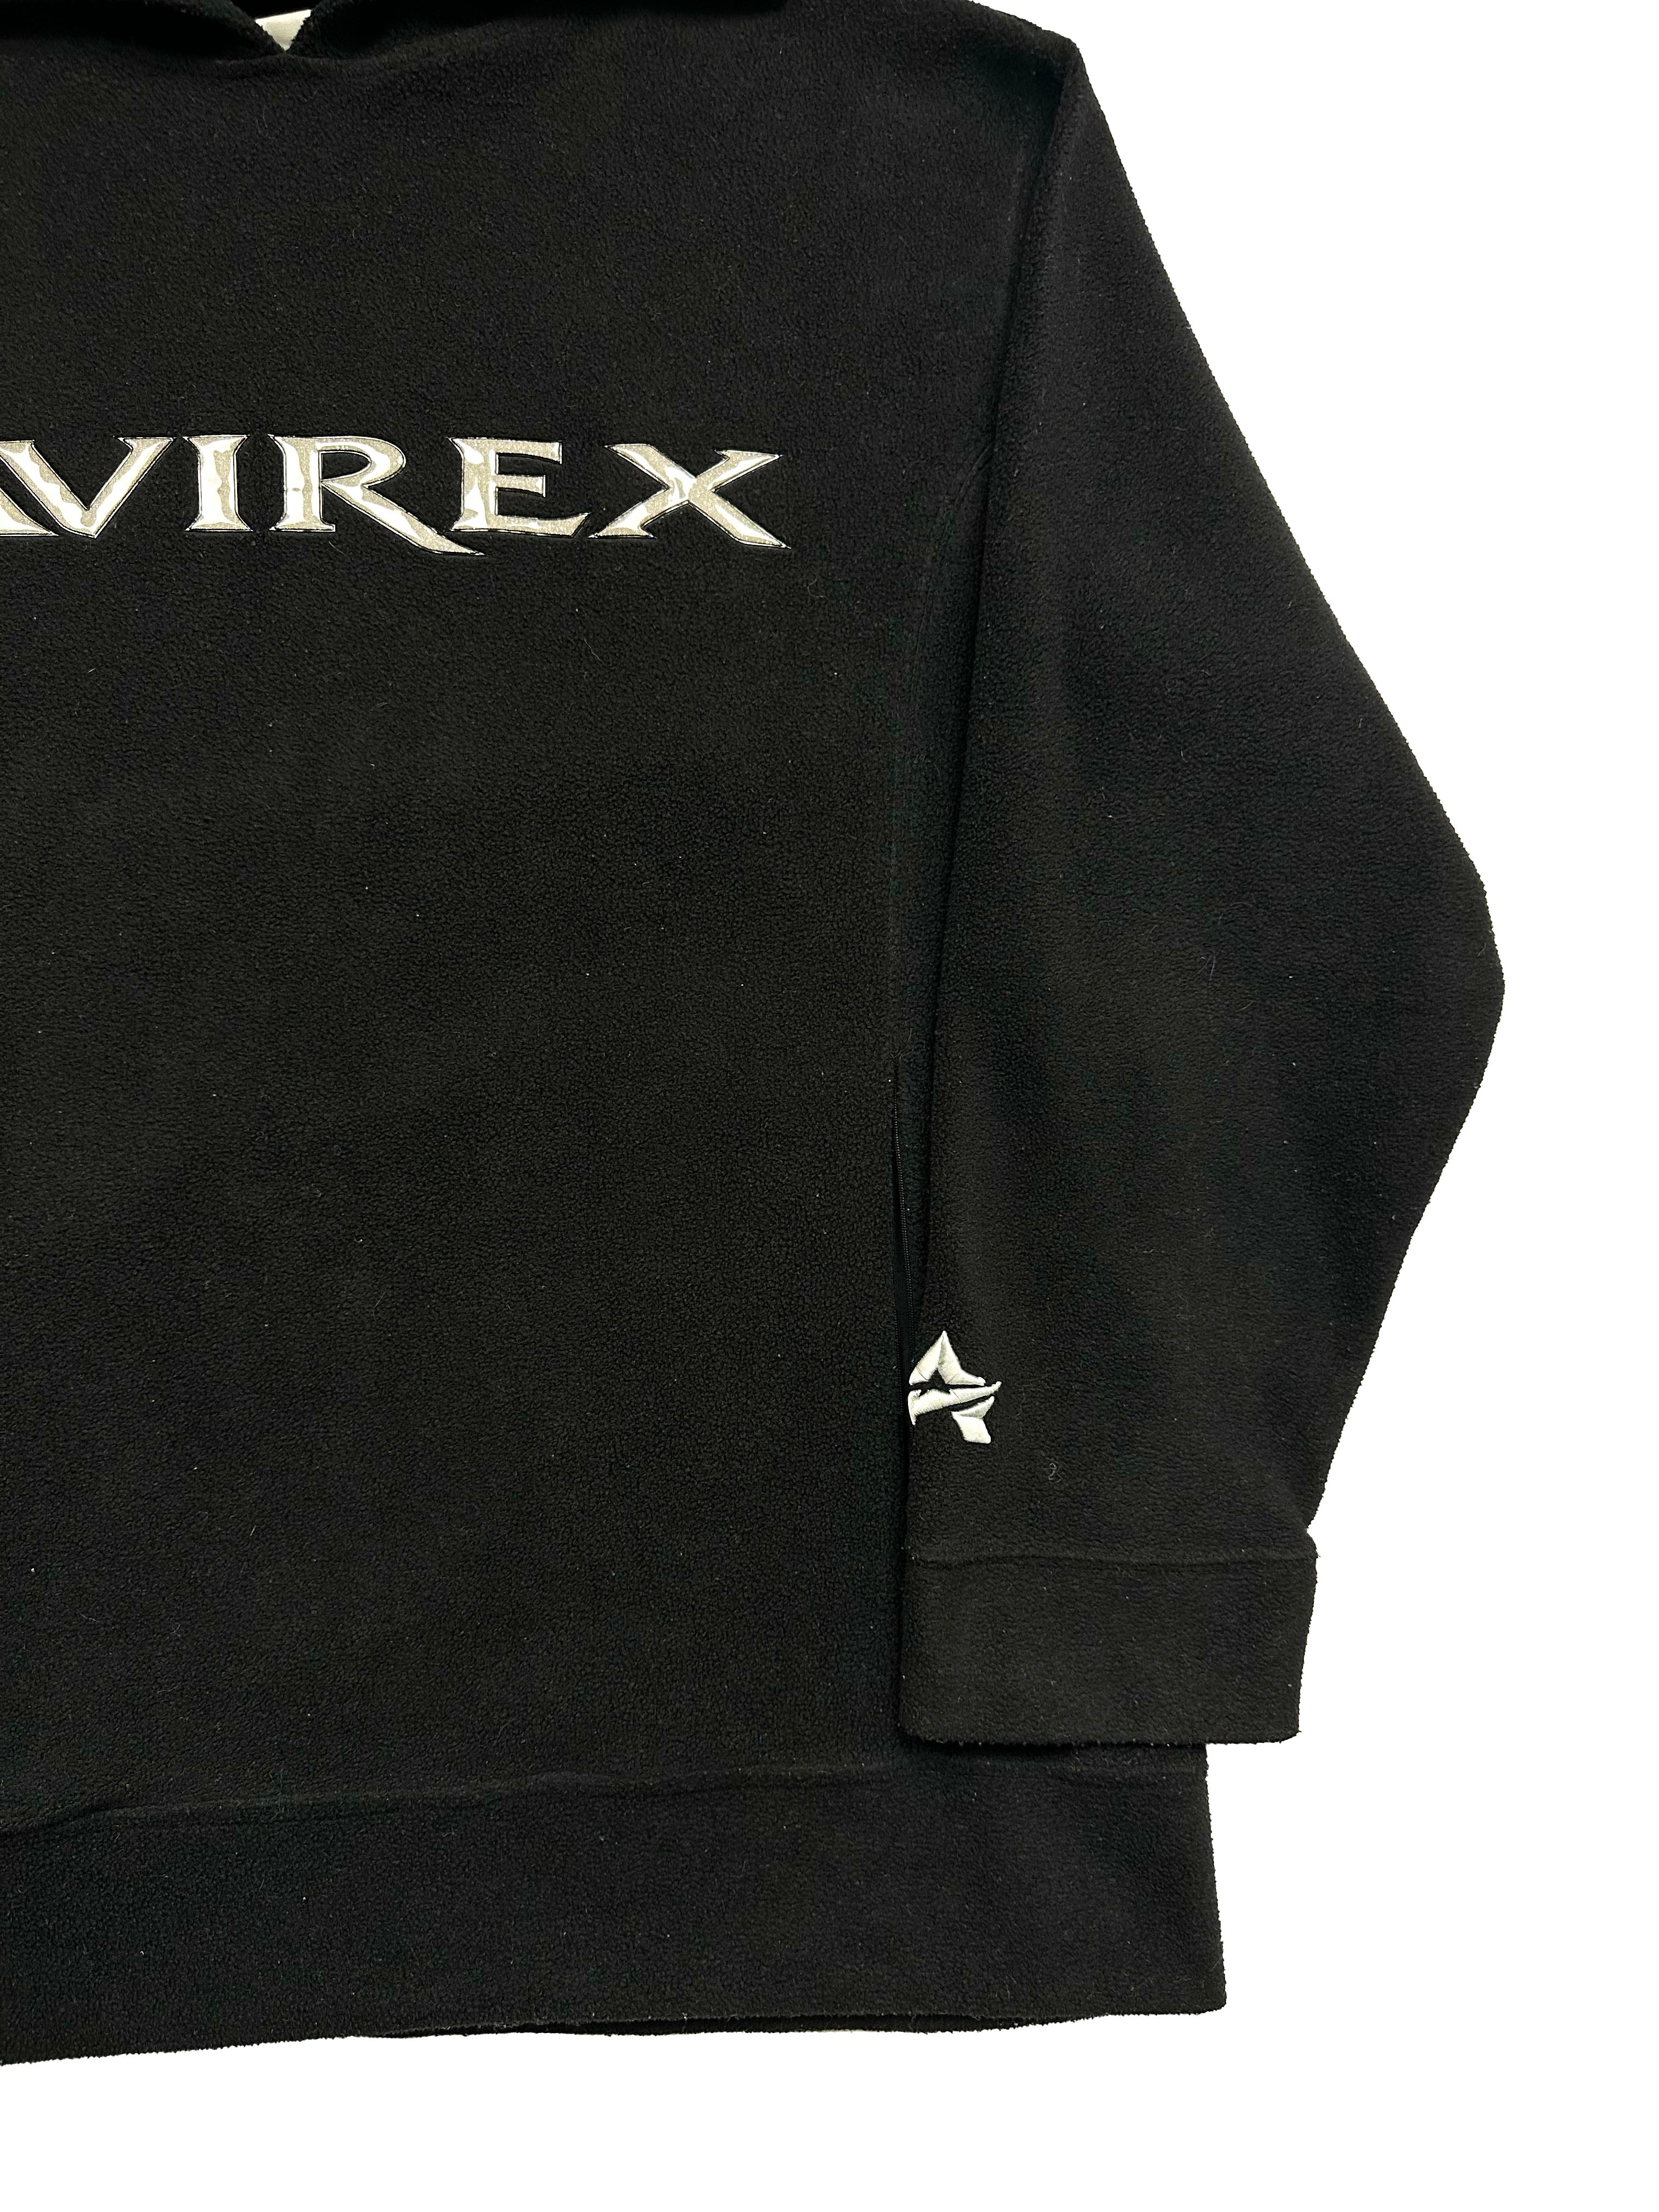 Avirex Black Fleece Hoodie 90's